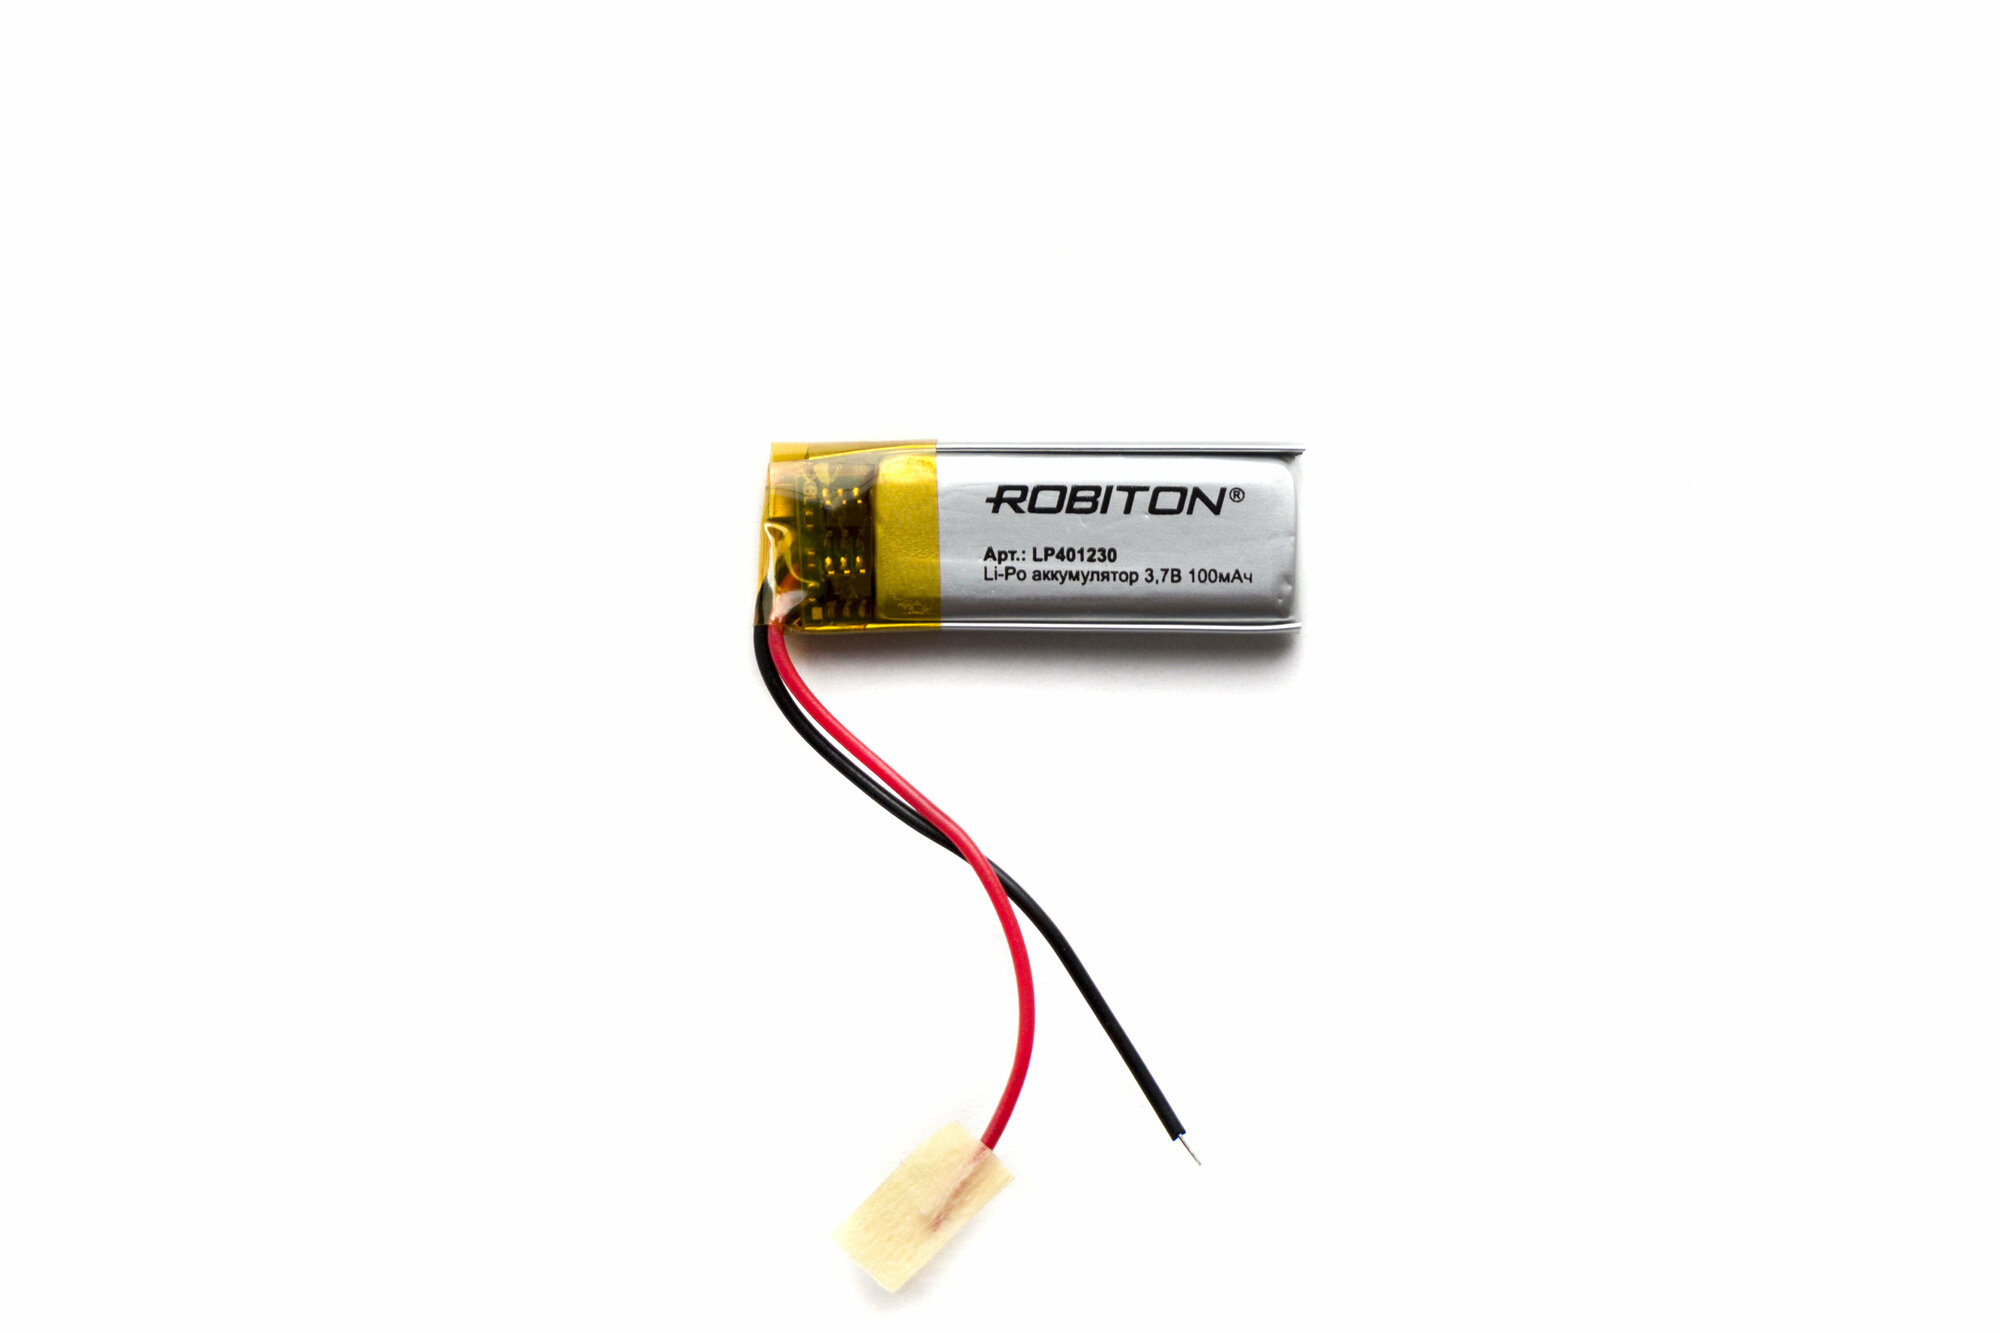 Литий-полимерный аккумулятор Robiton LP401230 100 мАч 3,7 В, с платой защиты, размеры 4 x 12 x 30 мм